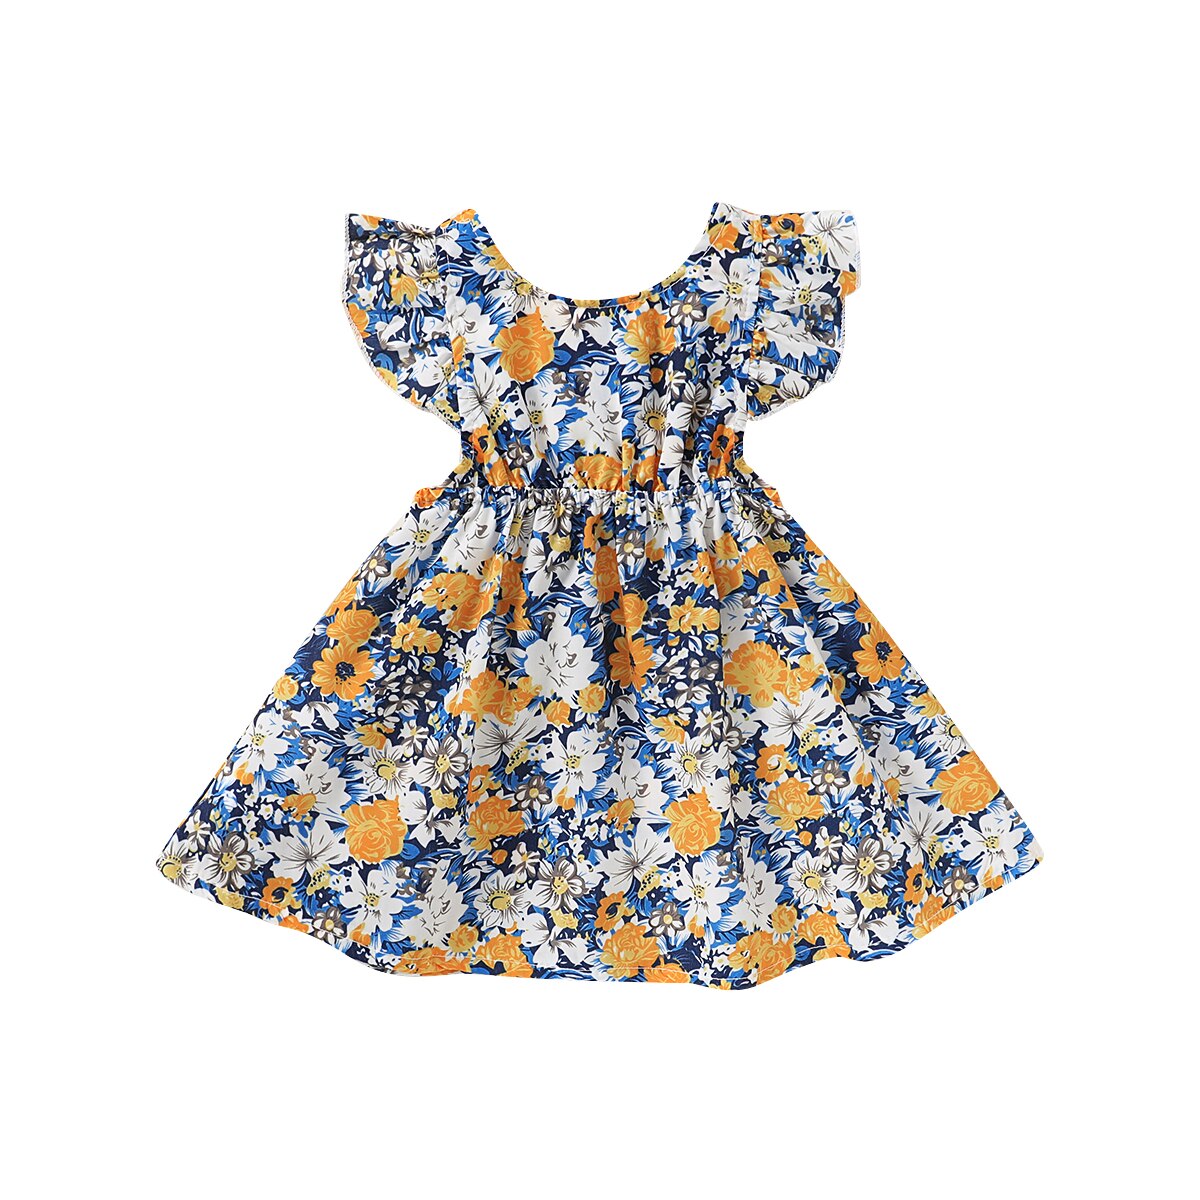 Uk toddler baby pige tøj søster matchende romper bodysuit kjole bomuld outfit: 120 / B